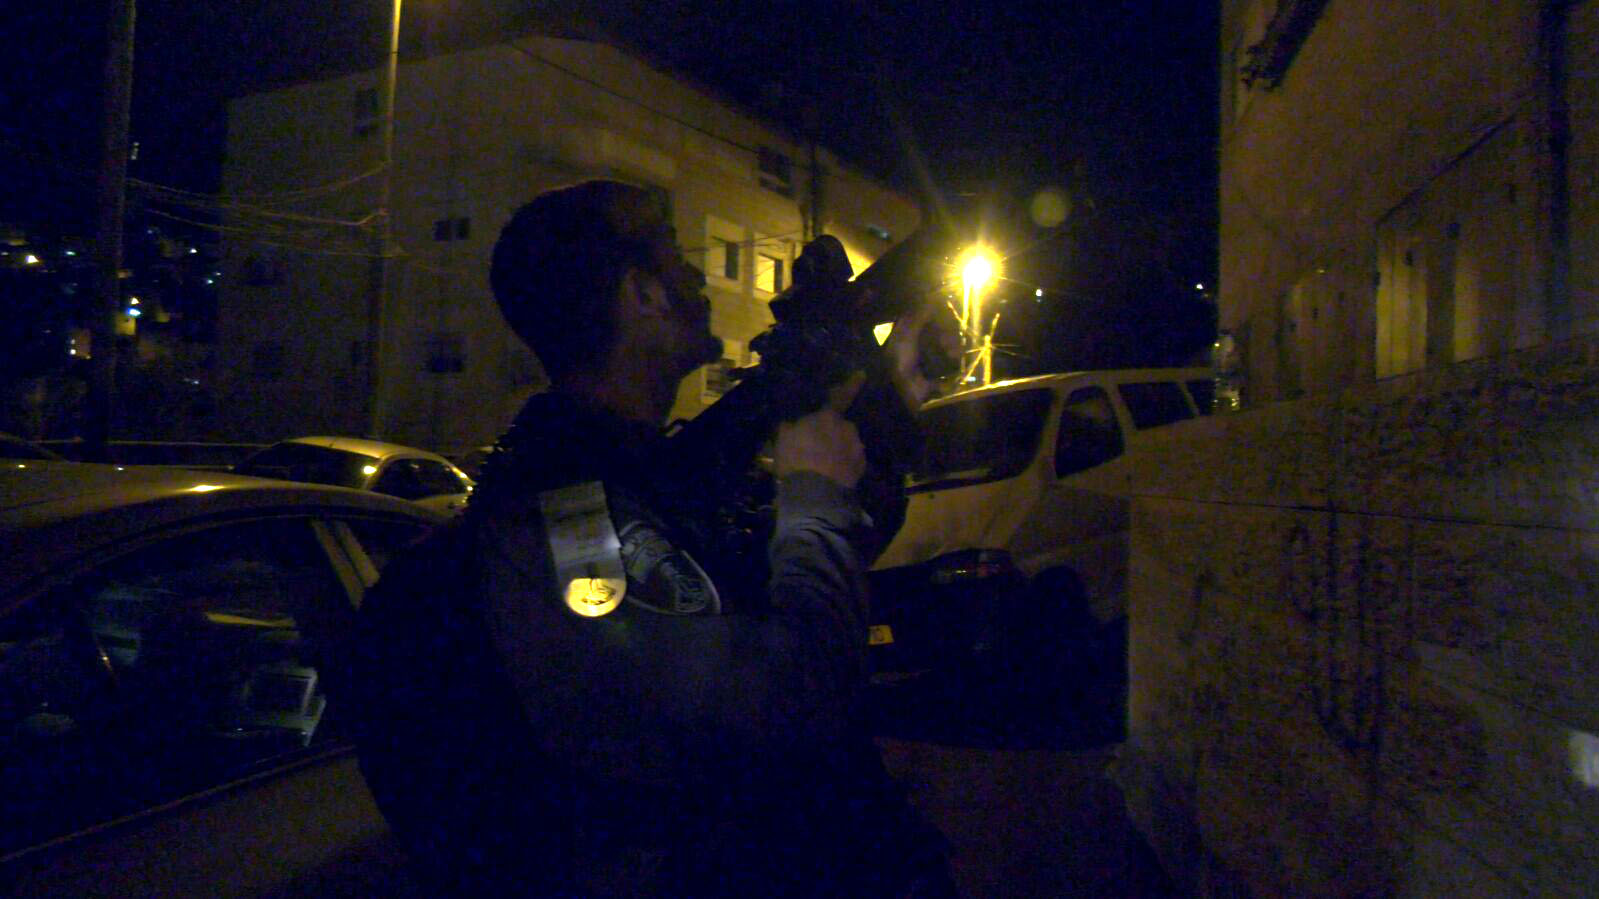 במבצע מעצרים מחוזי נעצרו הלילה 33 חשודים שלקחו חלק פעיל בהפרות הסדר בשבועיים האחרונים במזרח ירושלים (צילום: דוברות המשטרה)